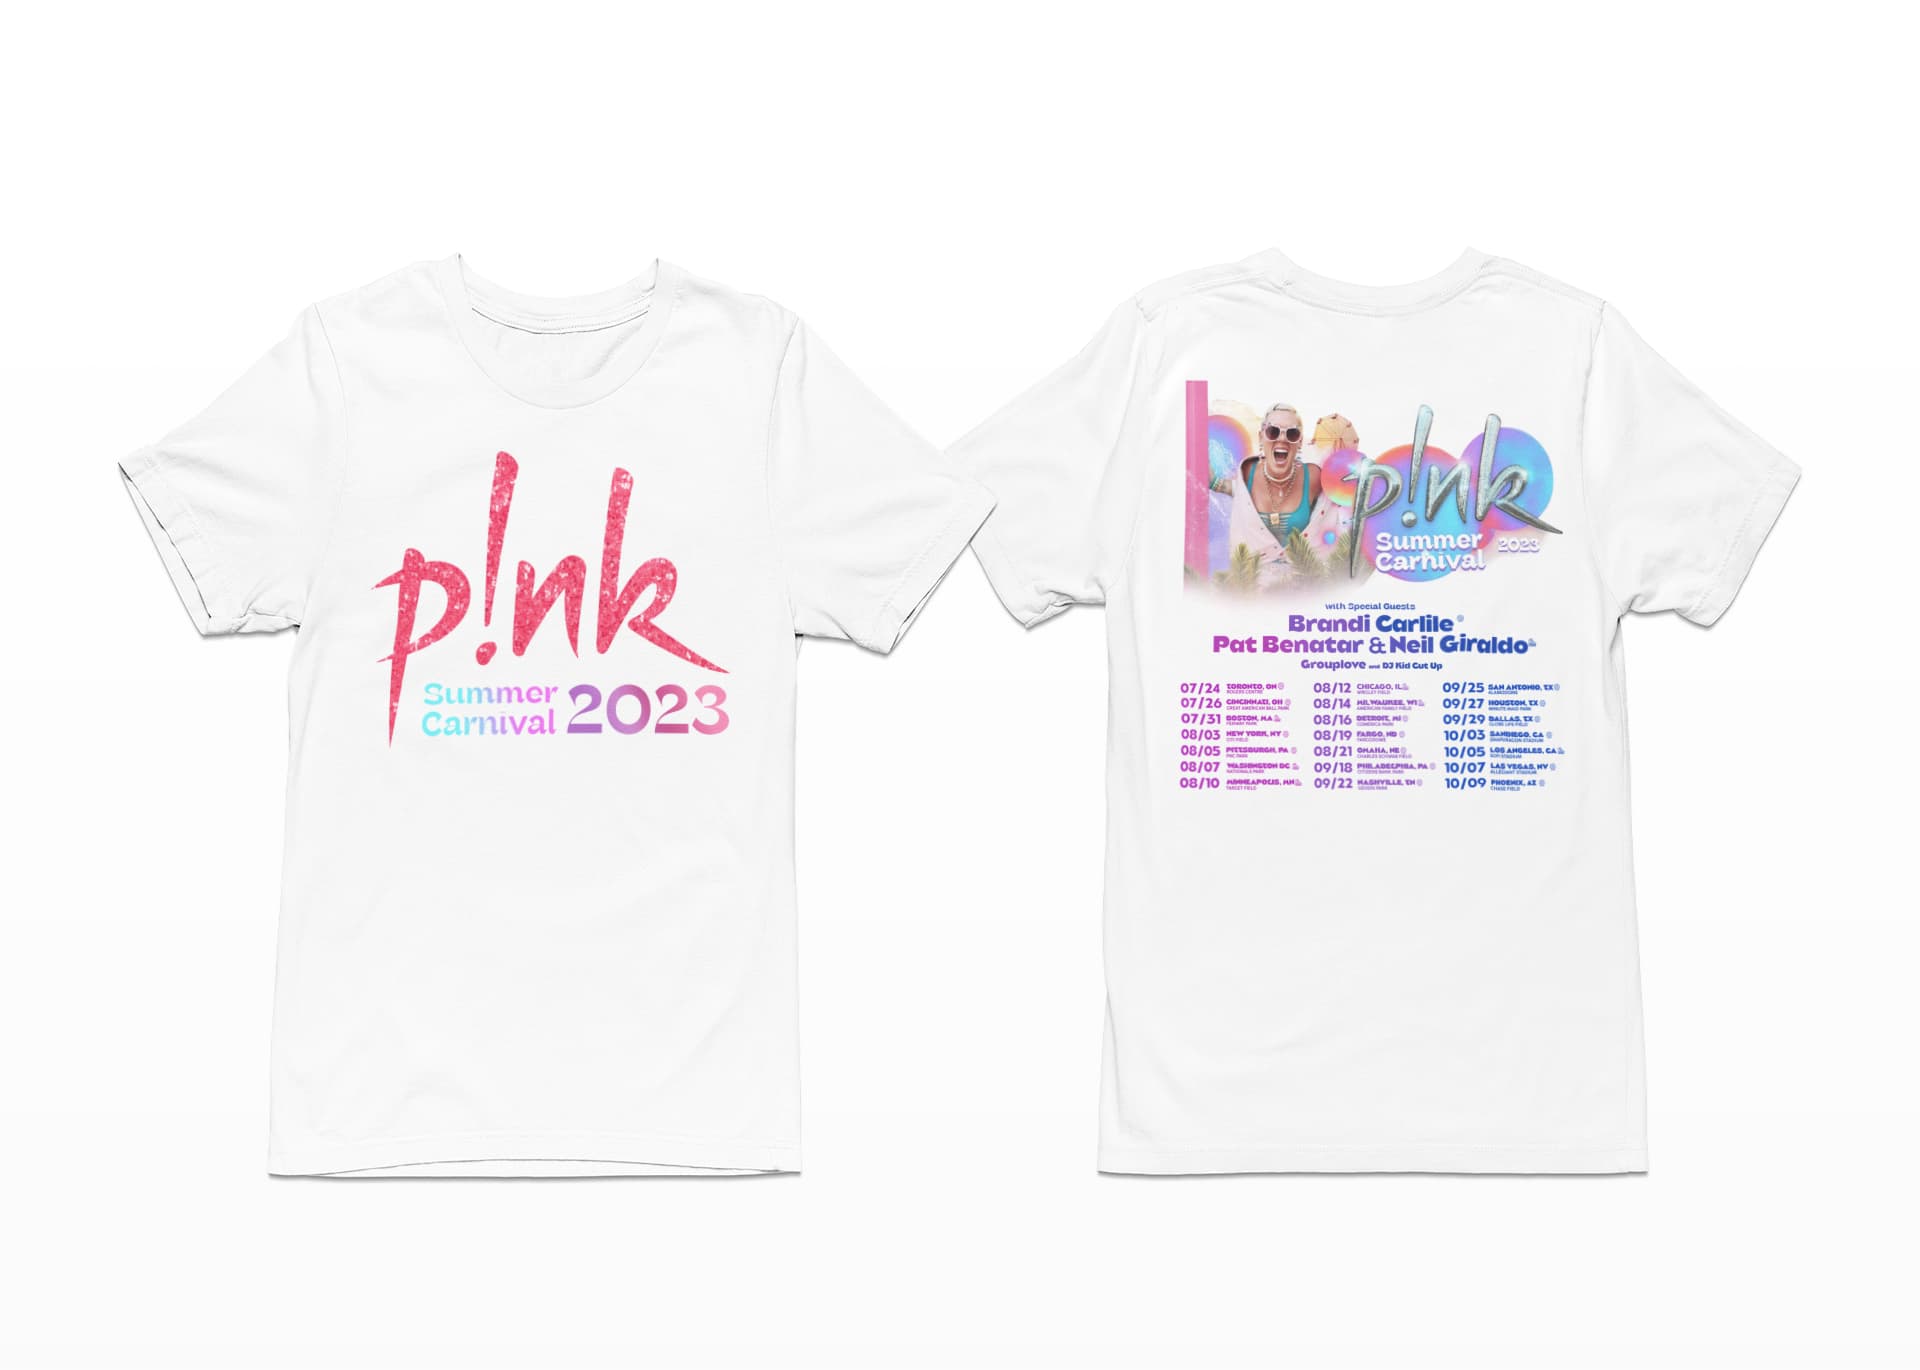 P!nk Pink Singer Summer Carnival 2023 Tour TShirt Lelemoon